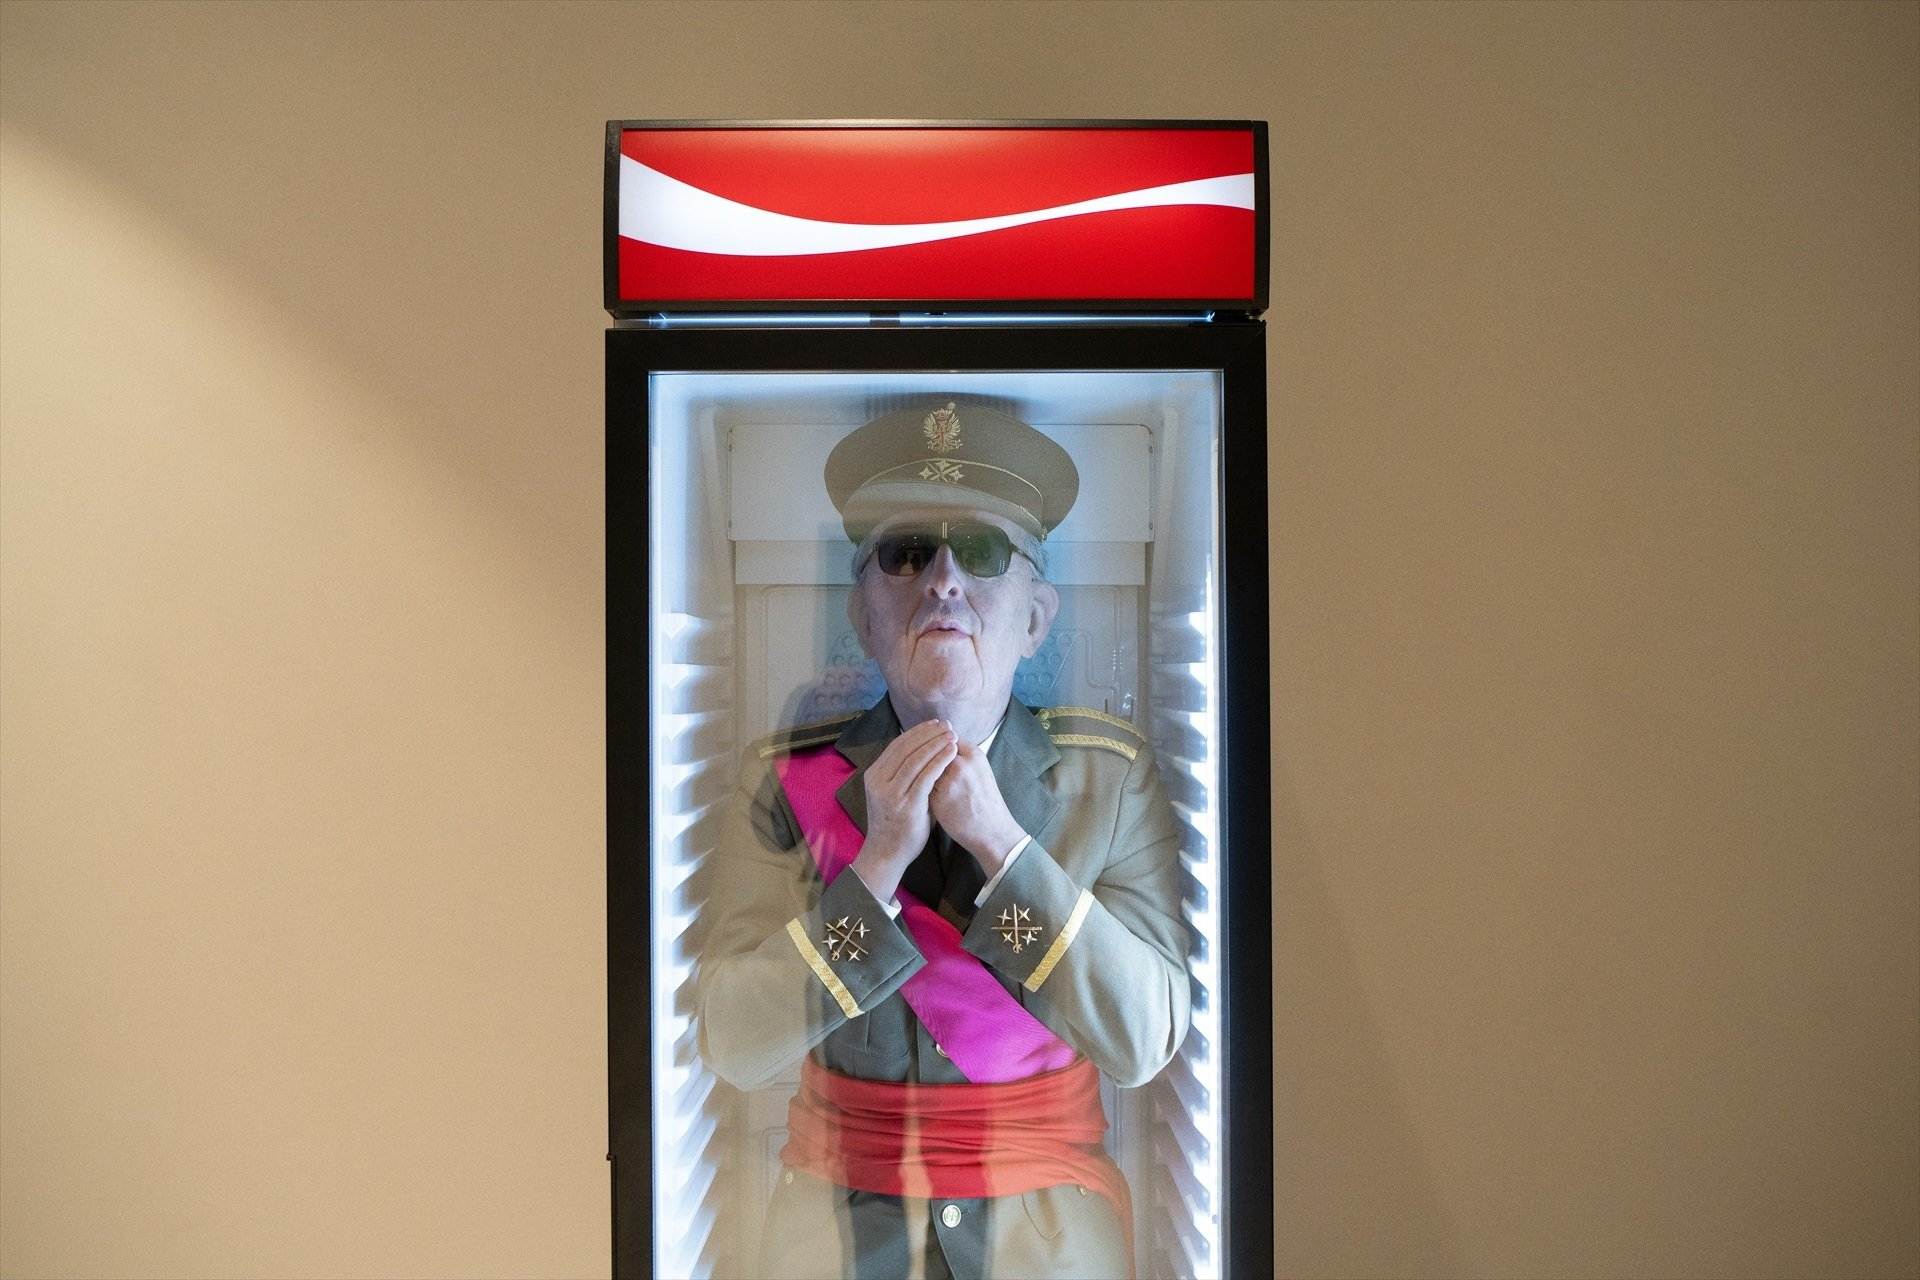 Vols veure el dictador Franco congelat en una nevera de Coca-Cola?